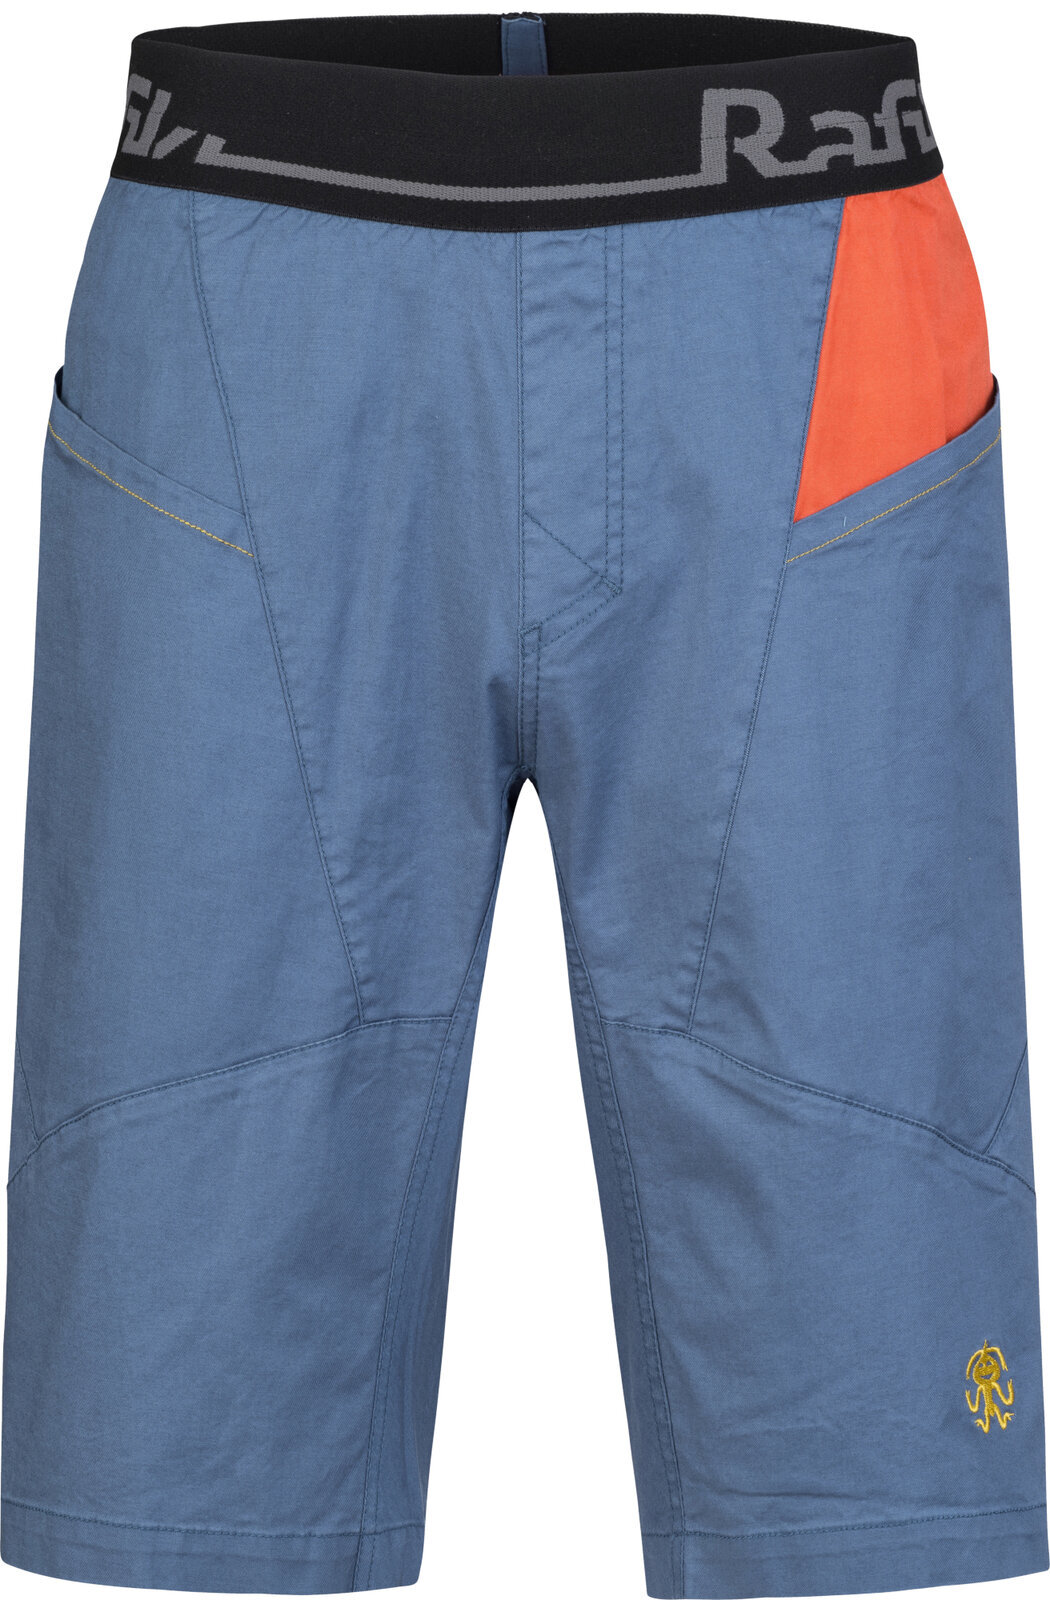 Shorts outdoor Rafiki Megos Man Shorts Ensign Blue/Clay L Shorts outdoor